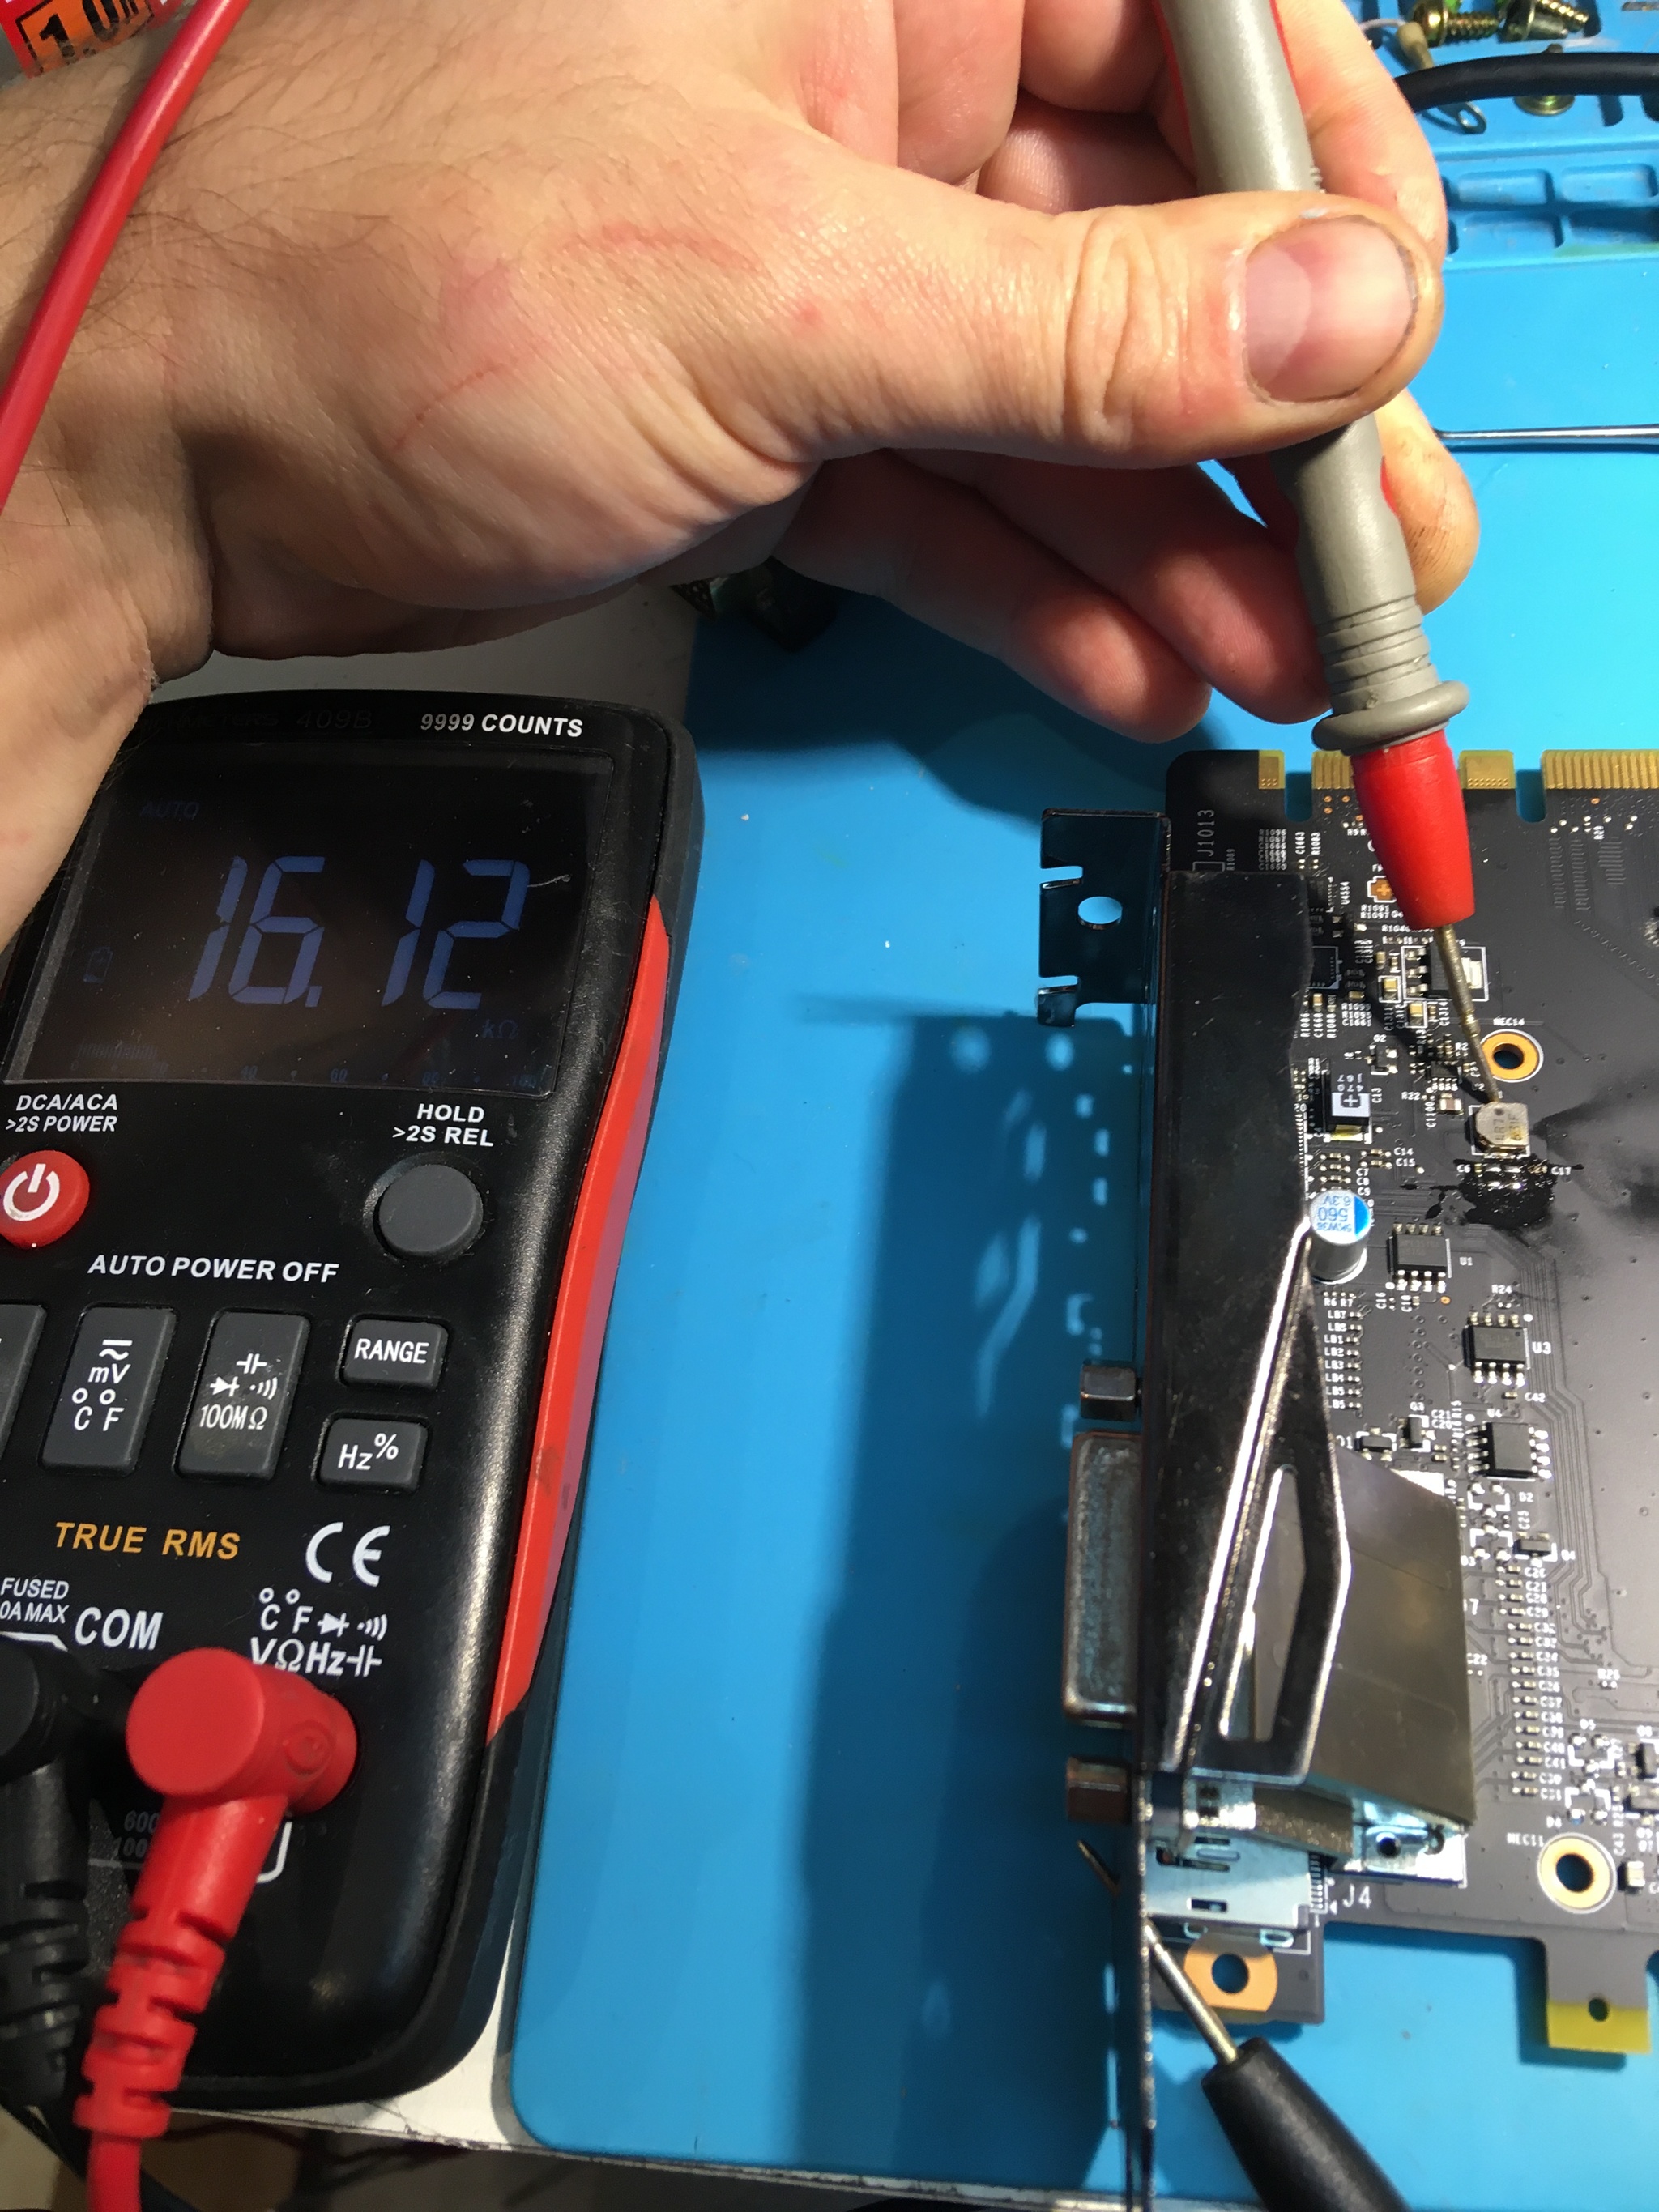 Simple GTX 1080 msi repair for subscriber - My, Repair of equipment, Hobby, Video card, Computer Repair, Longpost